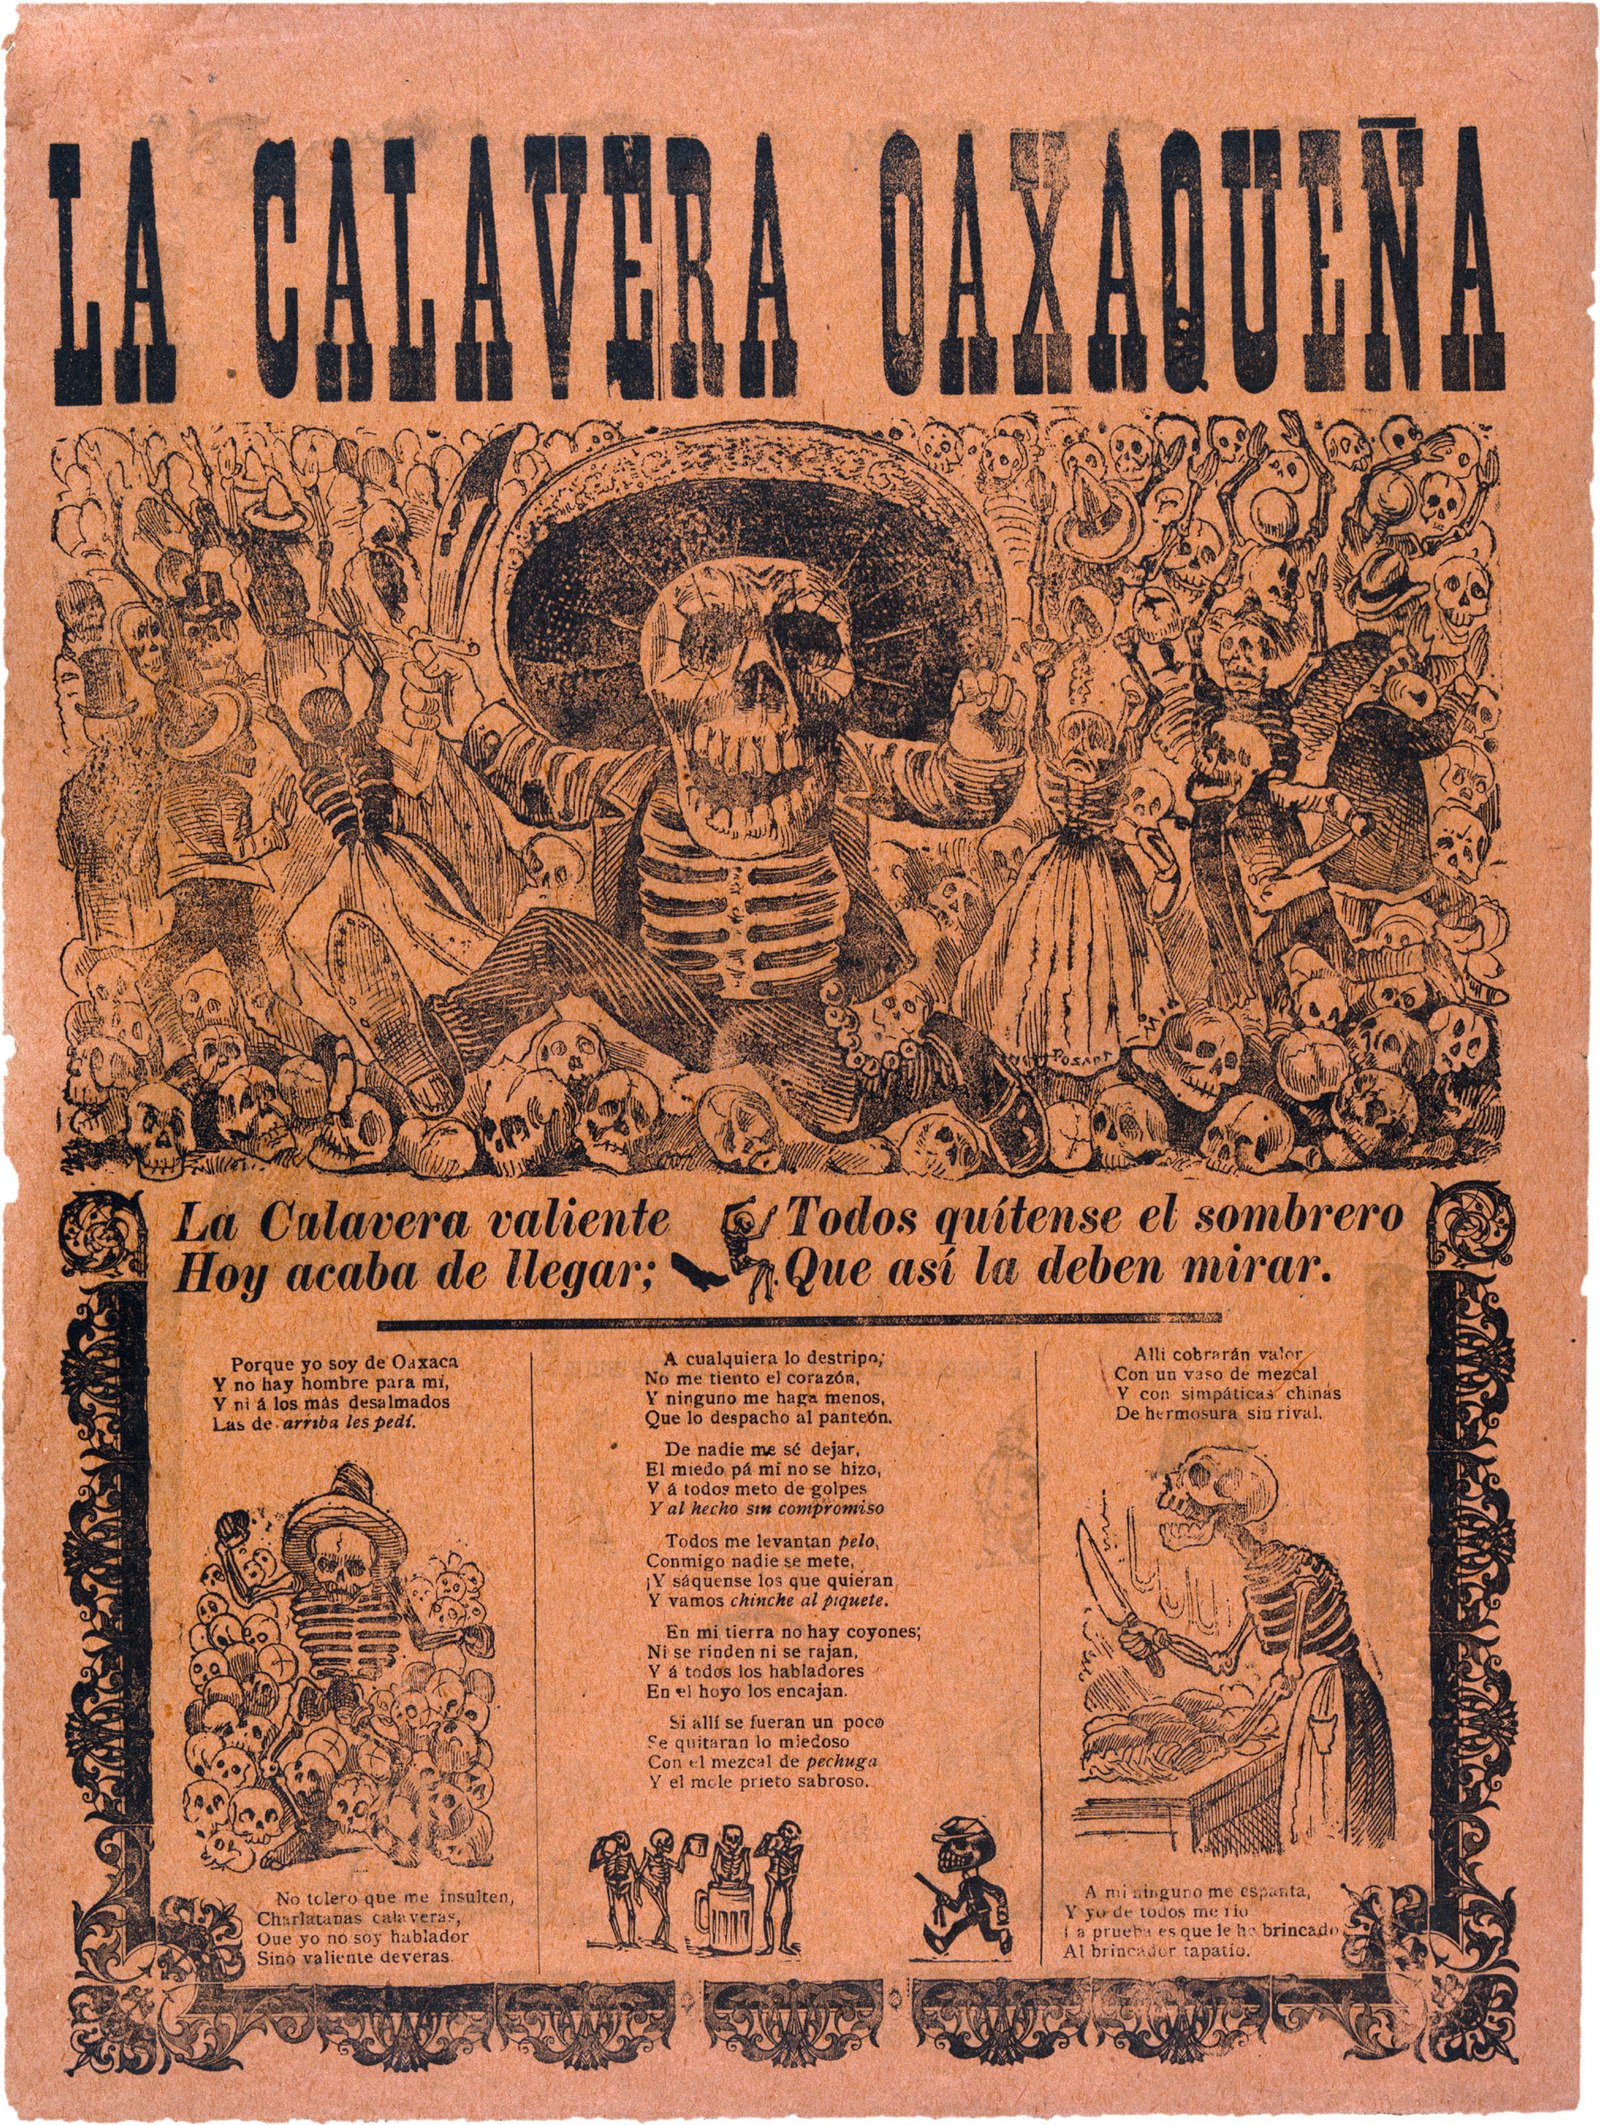 A poster of skeletons black ink on orange paper